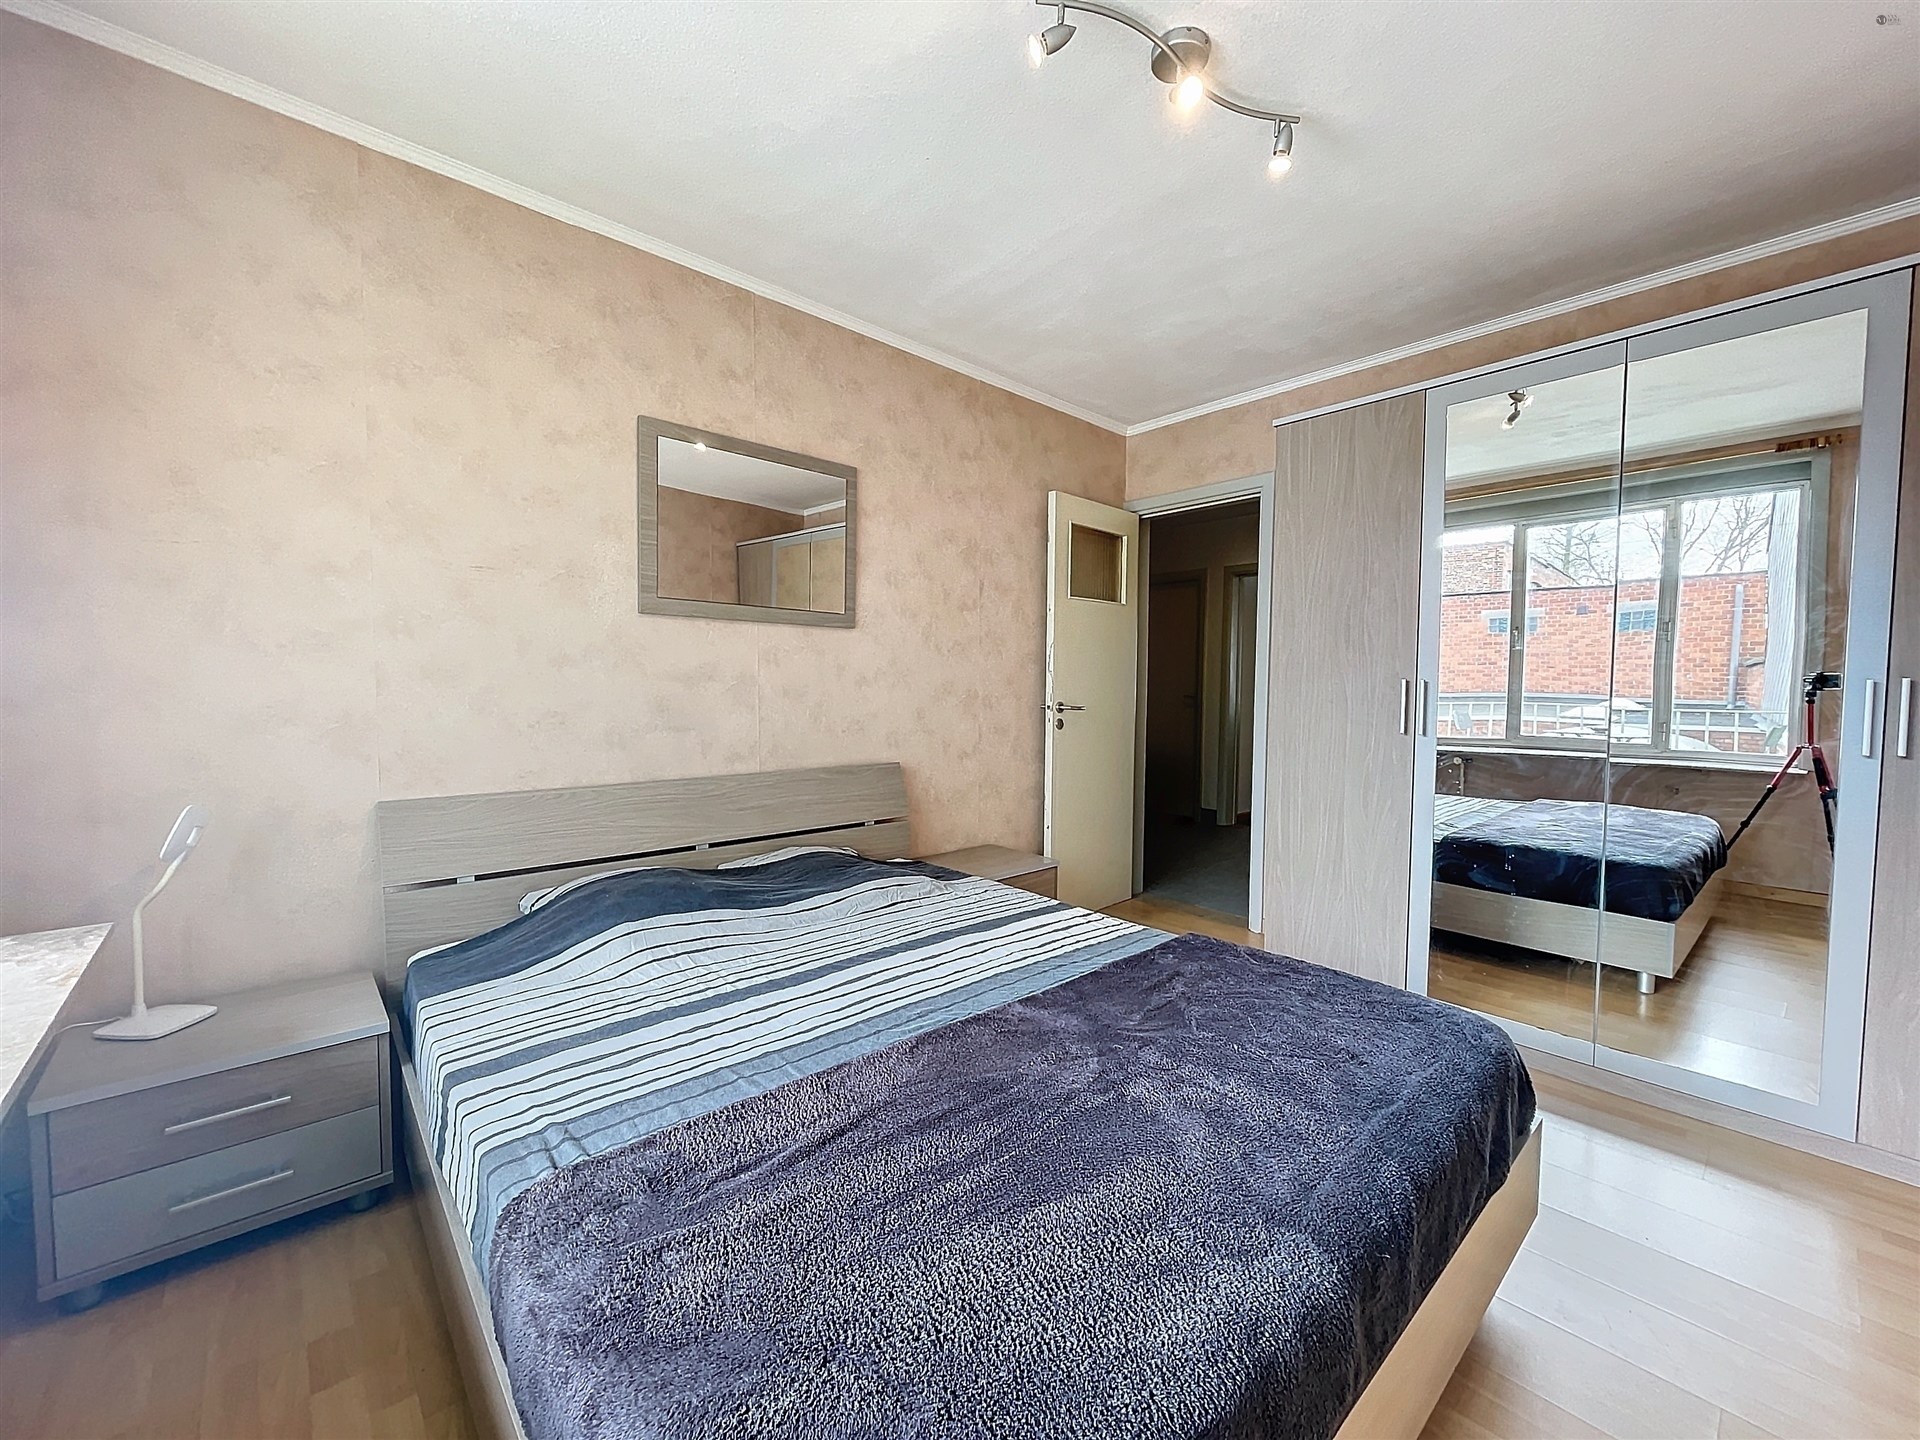 2-slaapkamer appartement met terras op toplocatie in centrum Sint-Niklaas foto 5